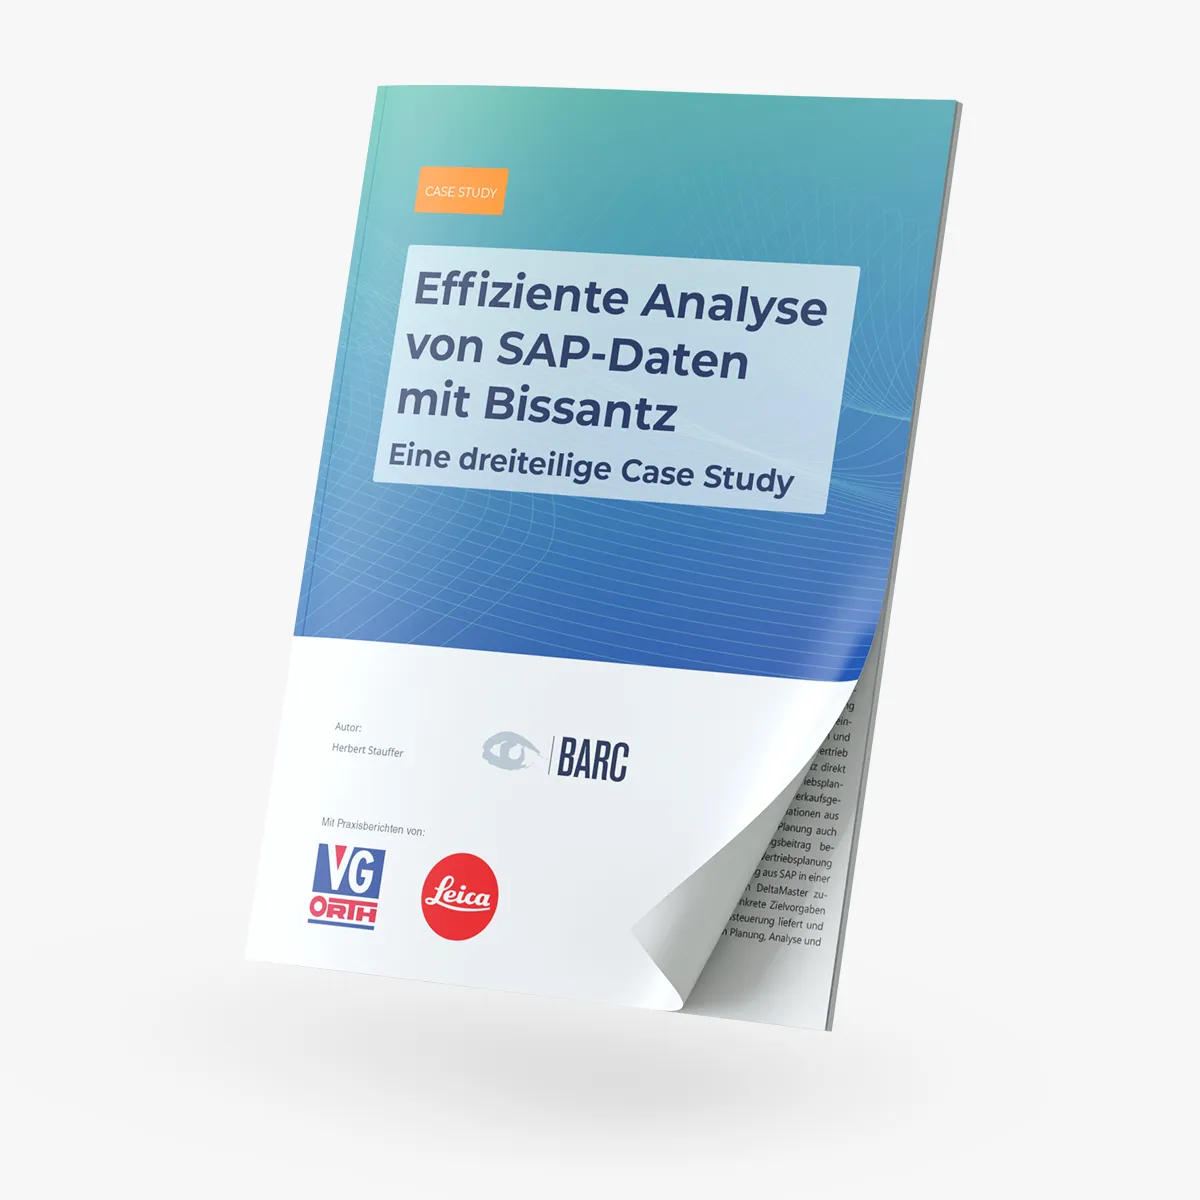 Case Study: Effiziente Analyse von SAP-Daten mit Bissantz.